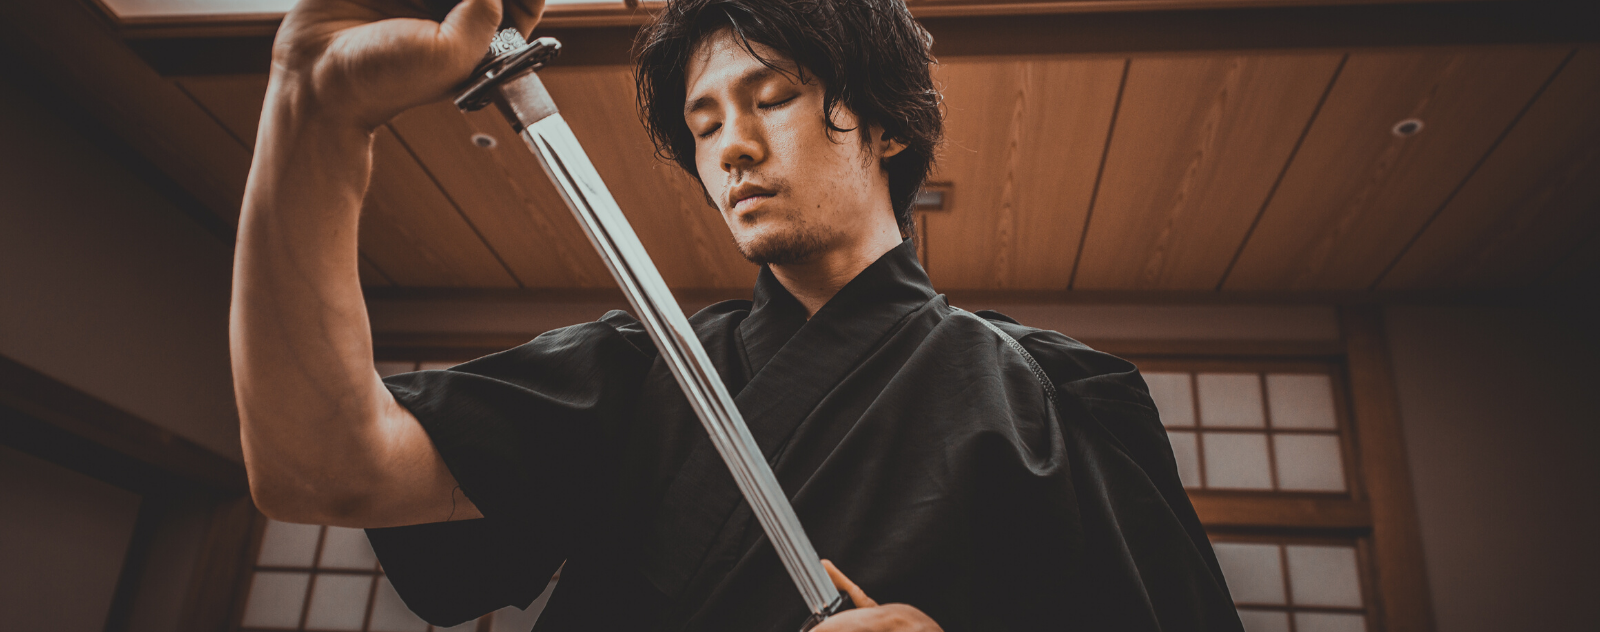 sabre samourai